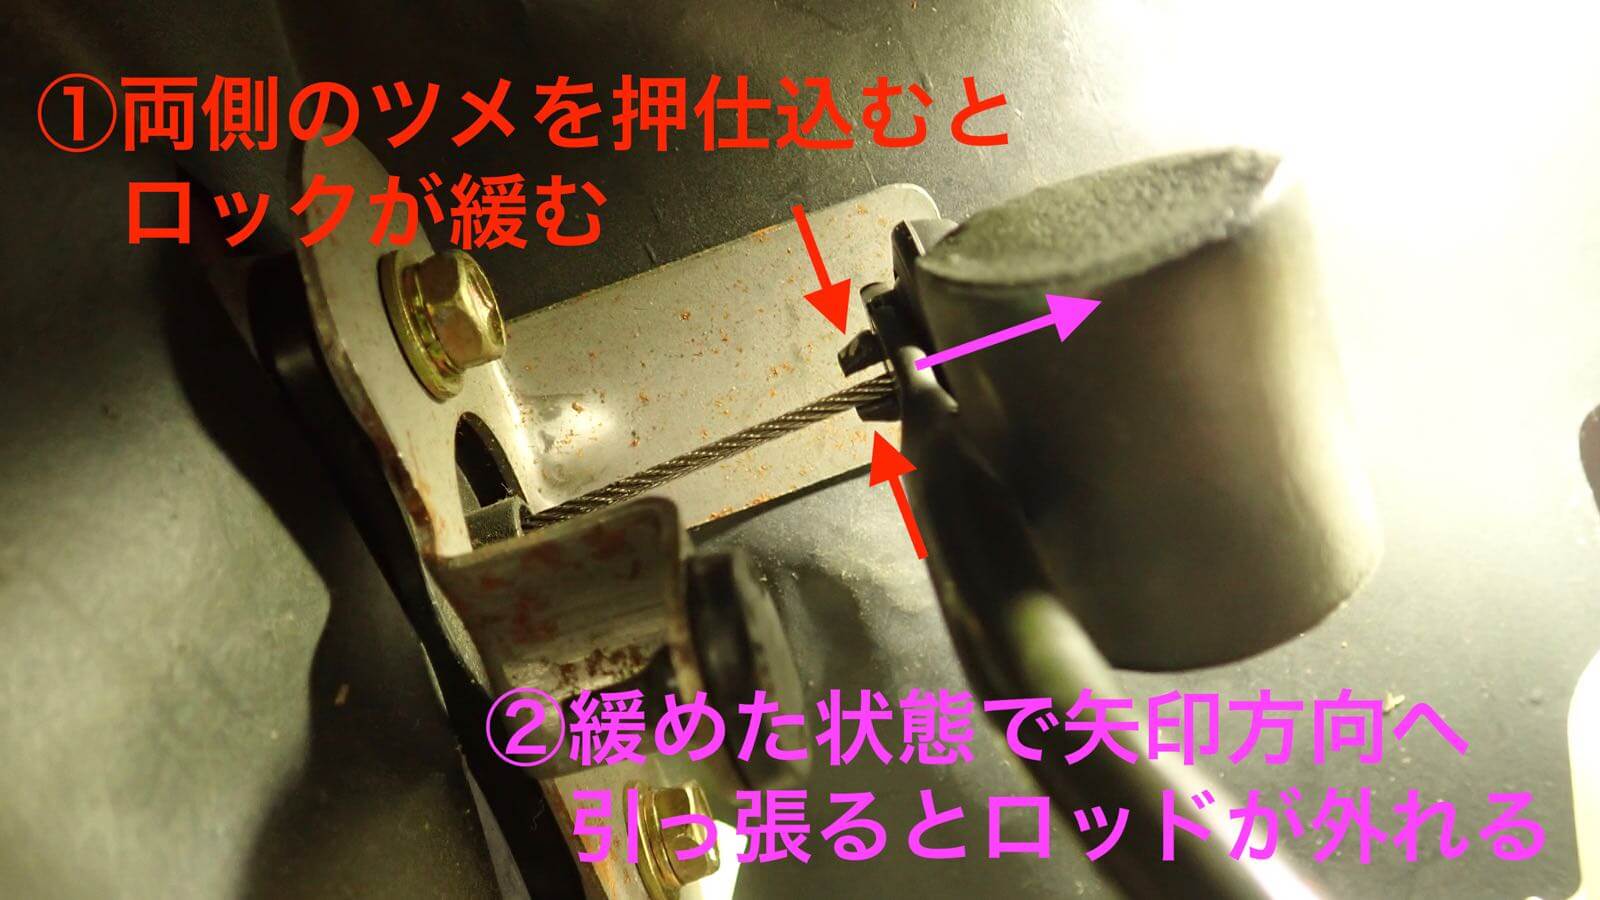 0214 Toyota genuine Aluminum pedal installation method 27